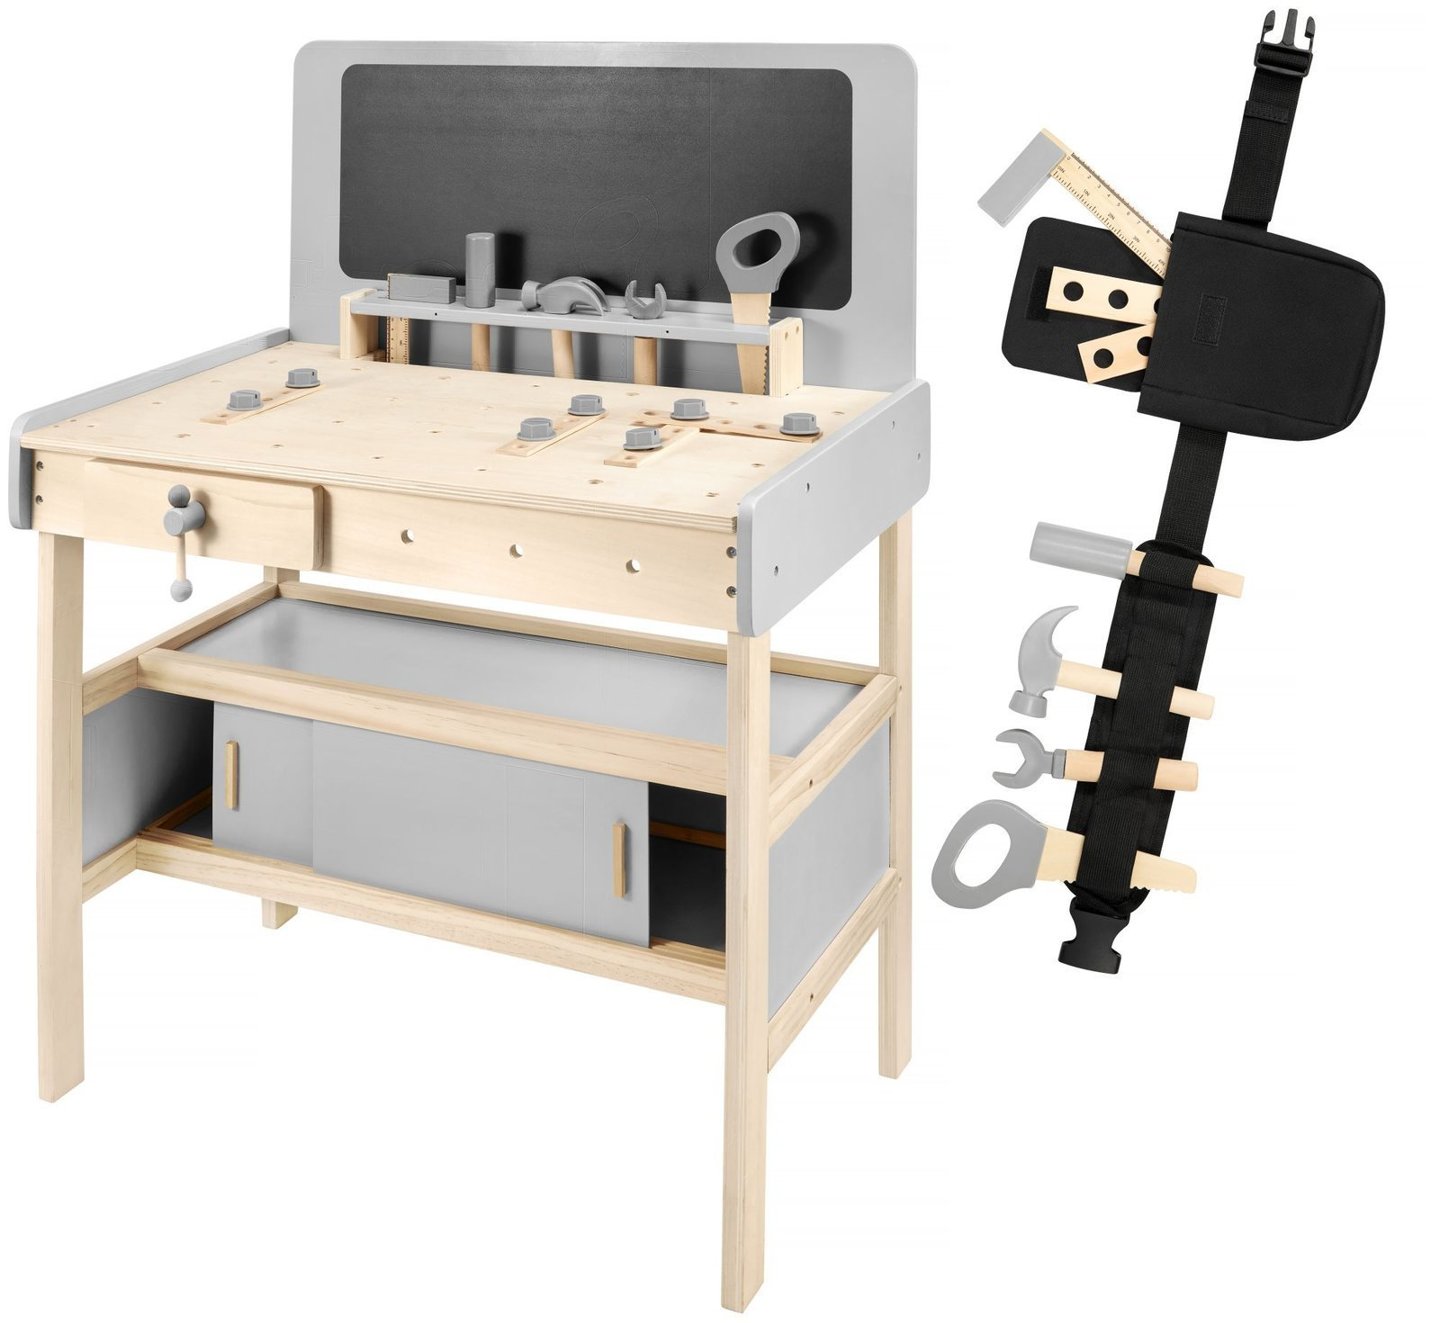 Atelier din lemn XXL pentru copii cu unelte, curea și tablă - 48 de bucăți.